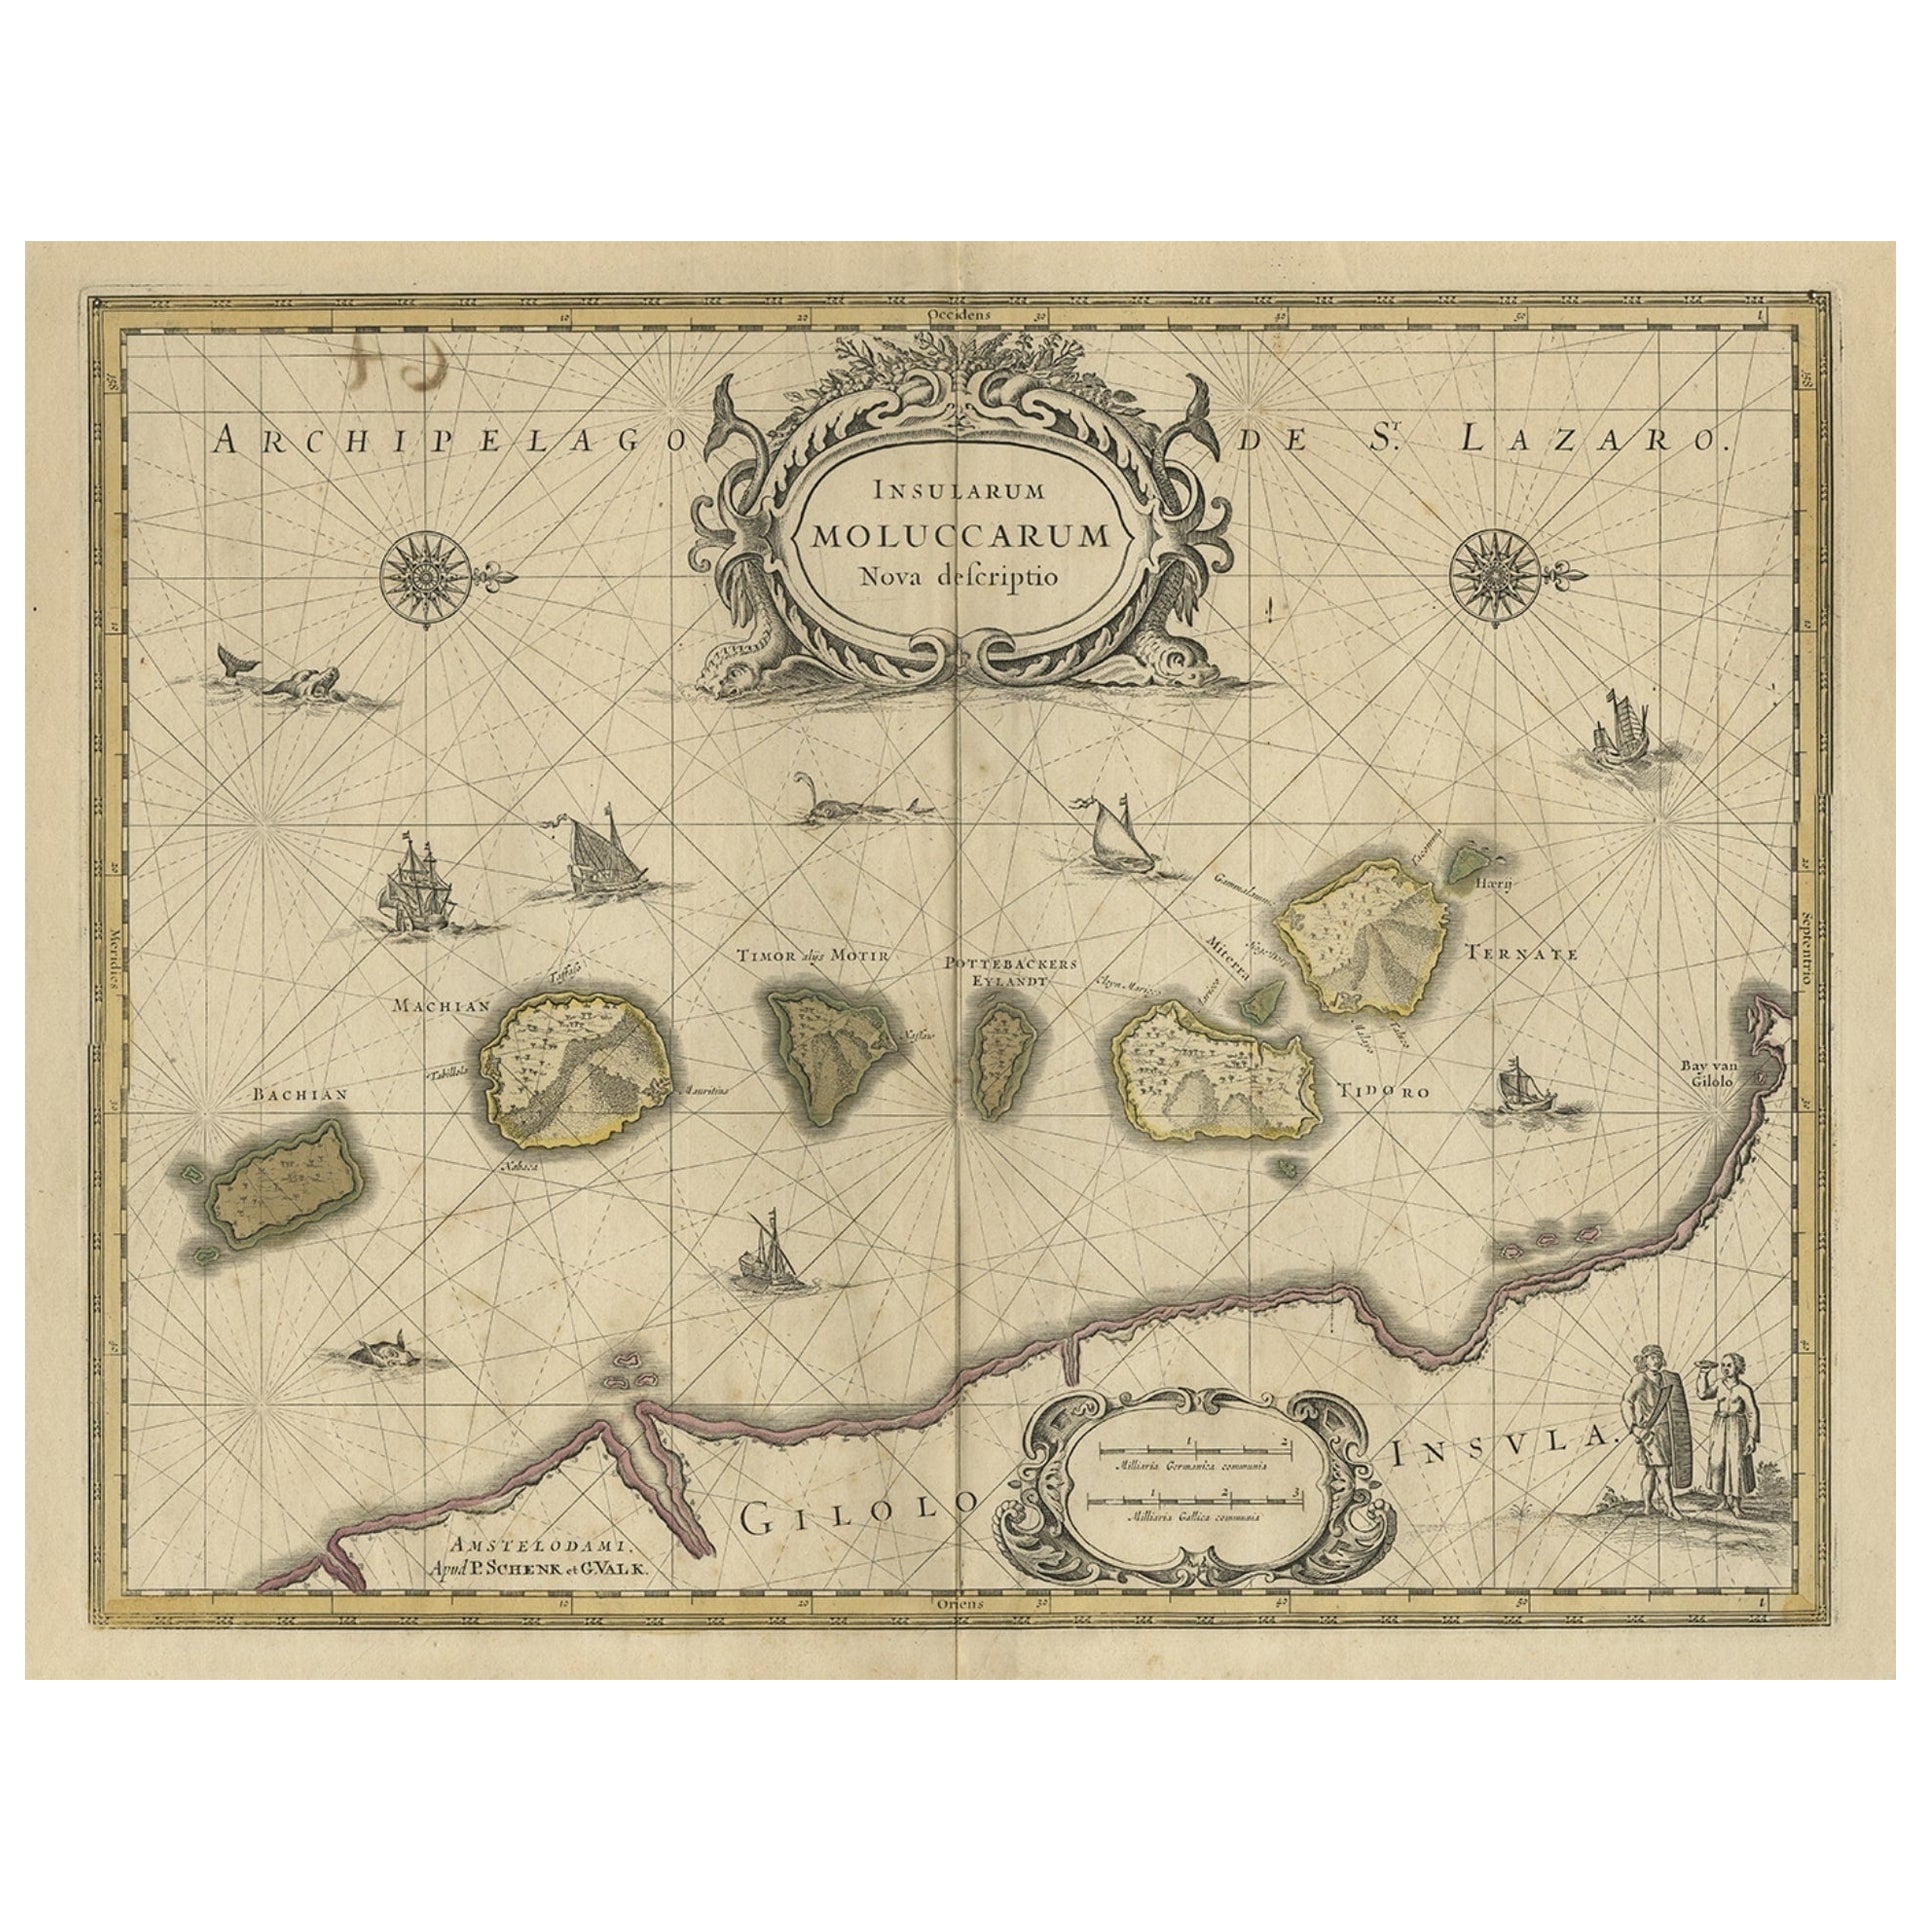 Alte Karte des Moluccas, bekannt als die berühmten Spice-Inseln, Indonesien, um 1730